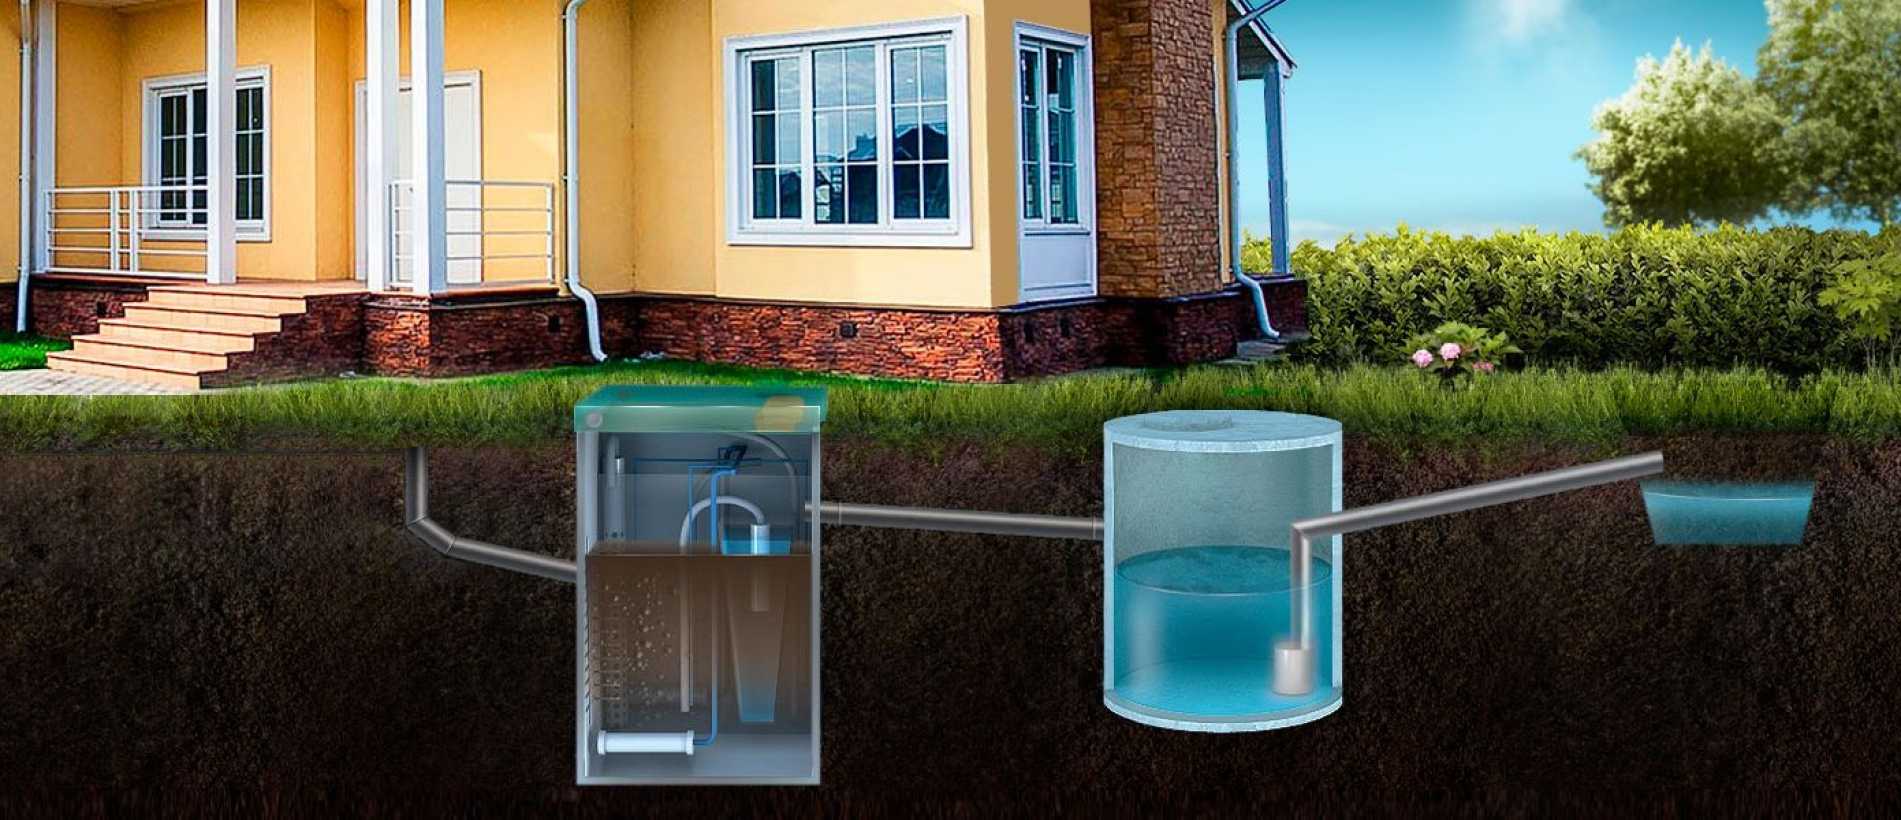 Разделение канализационных стоков и устройство септика для индивидуального дома